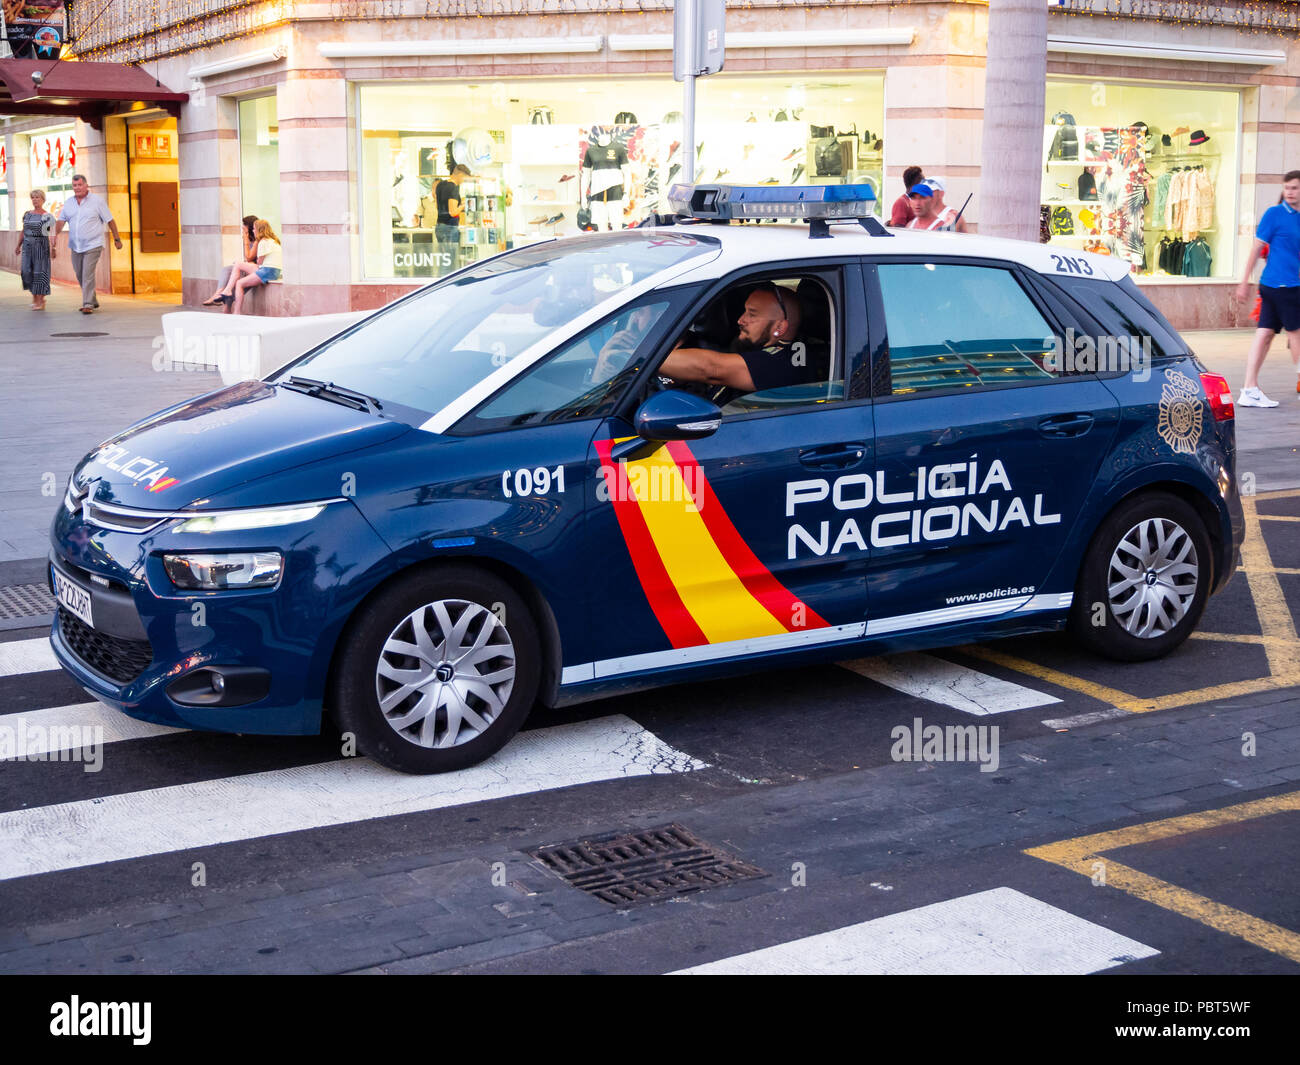 Playa de Las Americas, Tenerife, Spagna - Luglio 23, 2018: una polizia nazionale spagnola auto in Tenerife. Le forze di polizia nazionali sono principalmente responsabili di poli Foto Stock